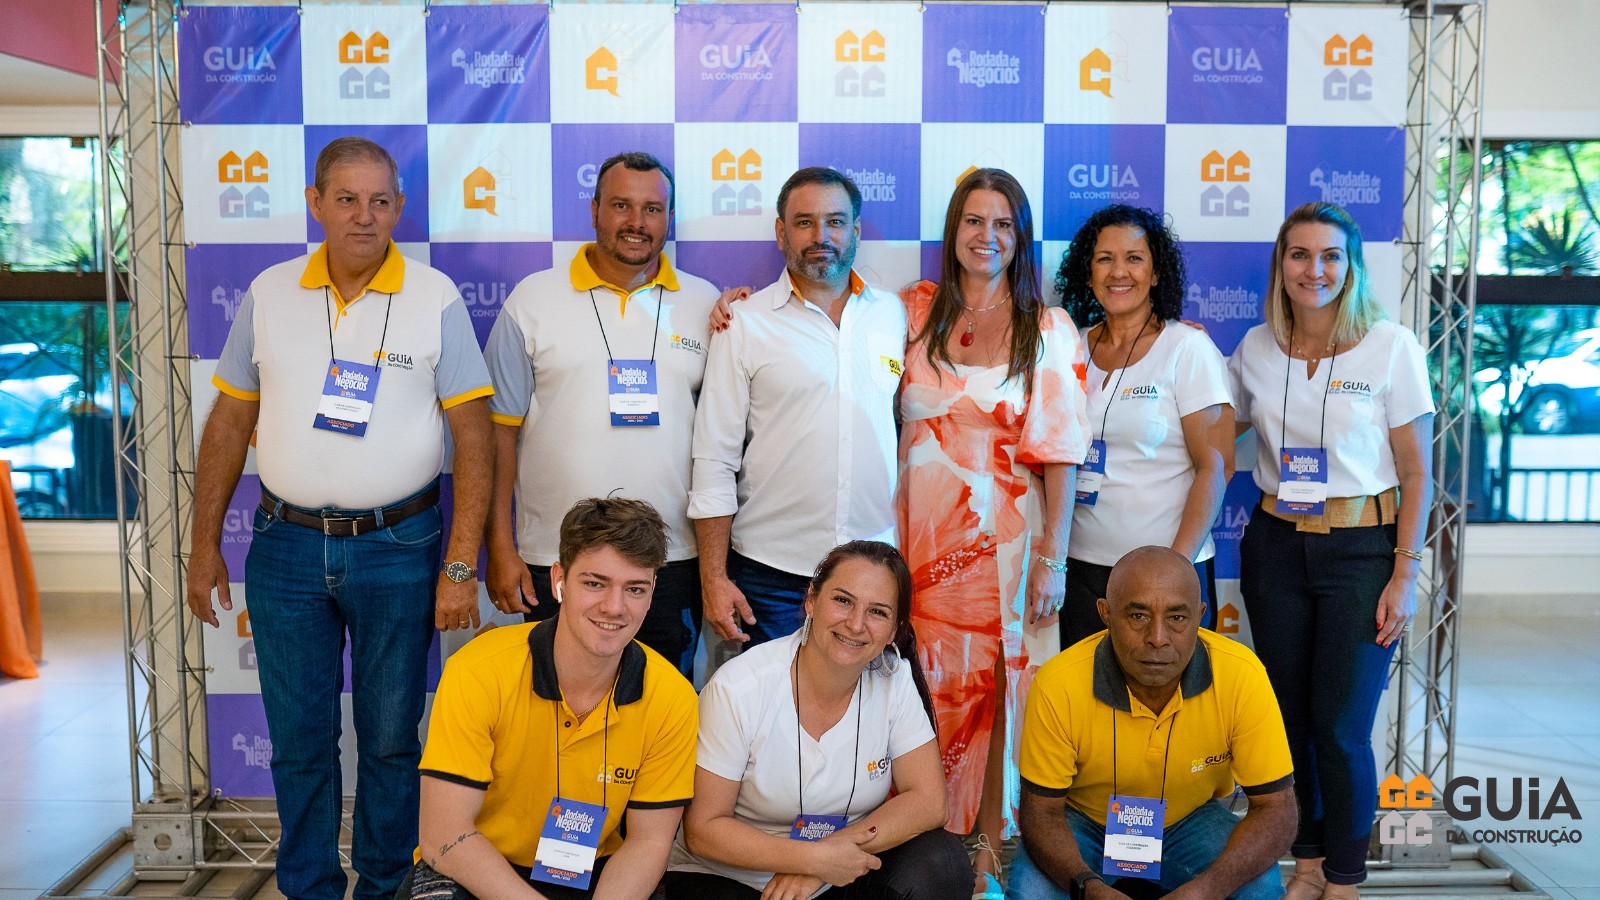 Rodada de Negócios: Guia da Construção realiza evento em Piracicaba 